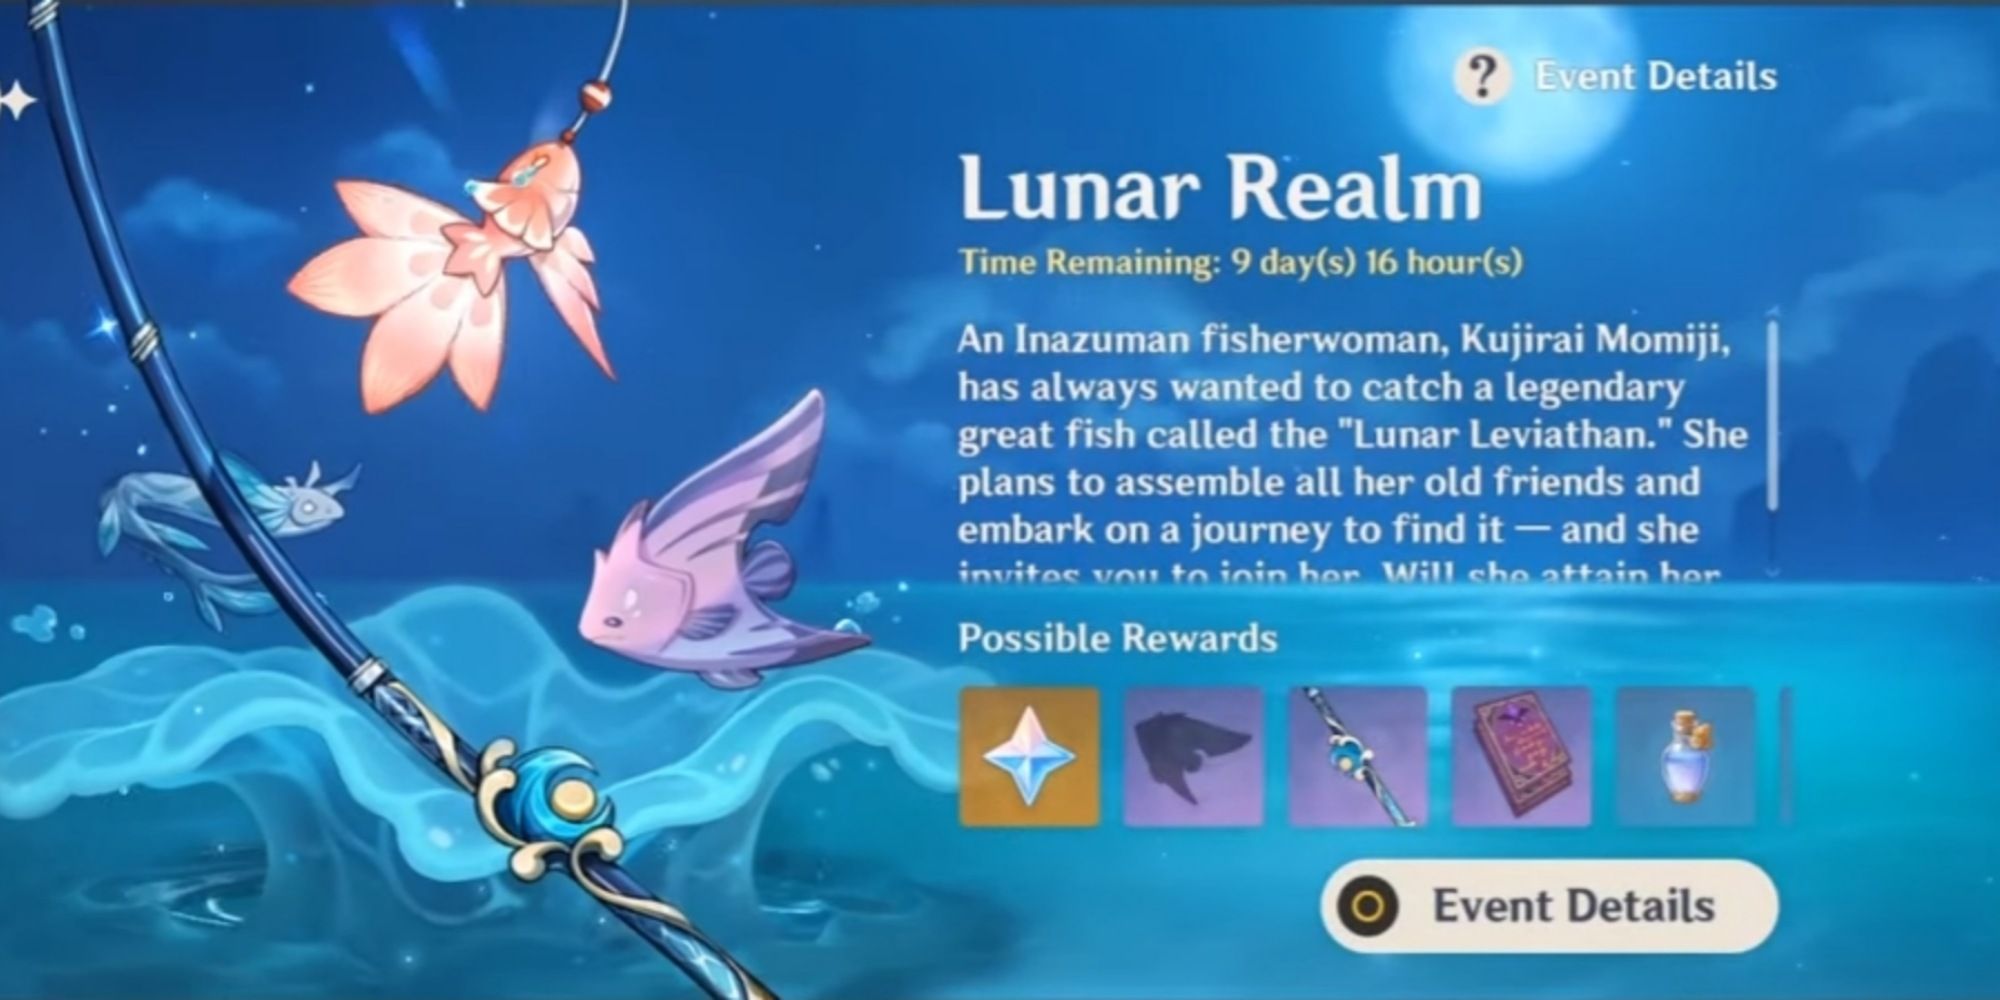 на обложке события лунного царства изображена пойманная рыба